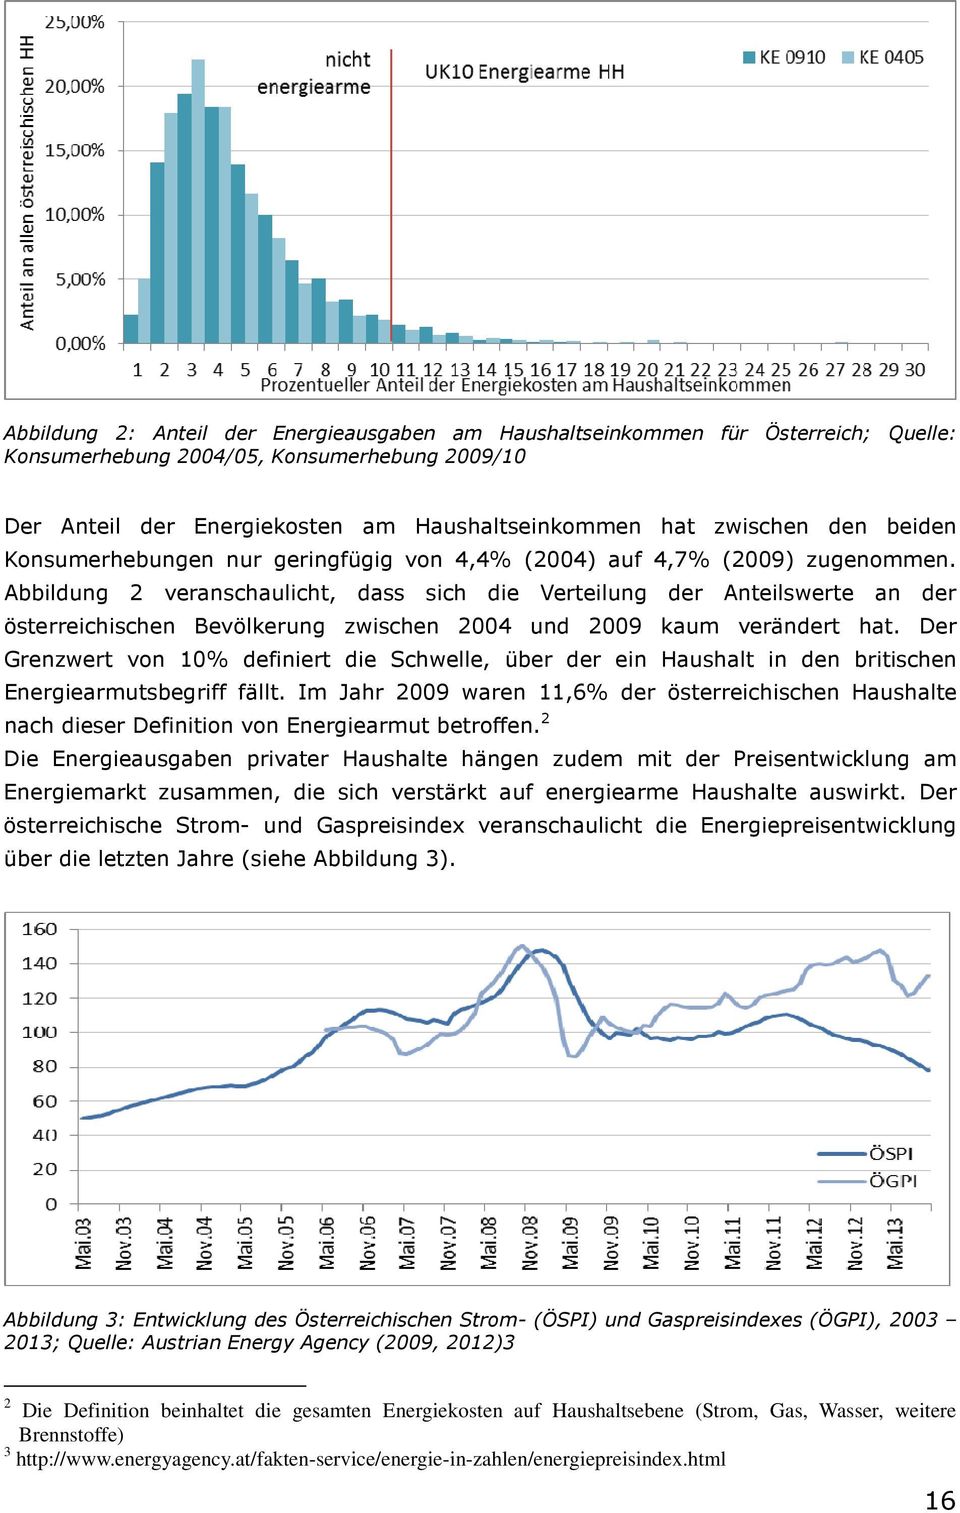 Abbildung 2 veranschaulicht, dass sich die Verteilung der Anteilswerte an der österreichischen Bevölkerung zwischen 2004 und 2009 kaum verändert hat.